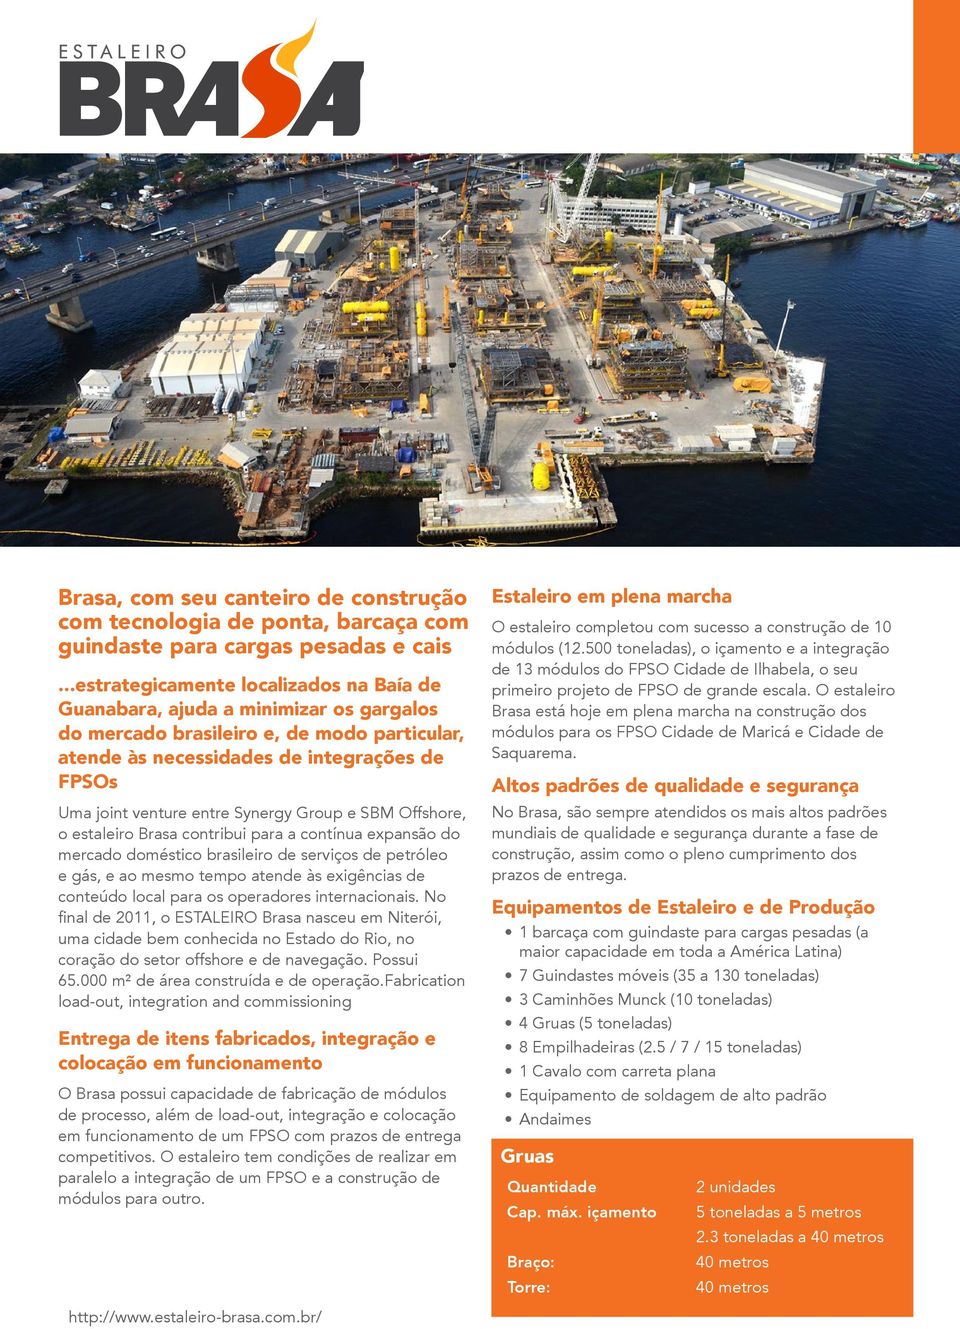 Synergy Group e SBM Offshore, o estaleiro Brasa contribui para a contínua expansão do mercado doméstico brasileiro de serviços de petróleo e gás, e ao mesmo tempo atende às exigências de conteúdo